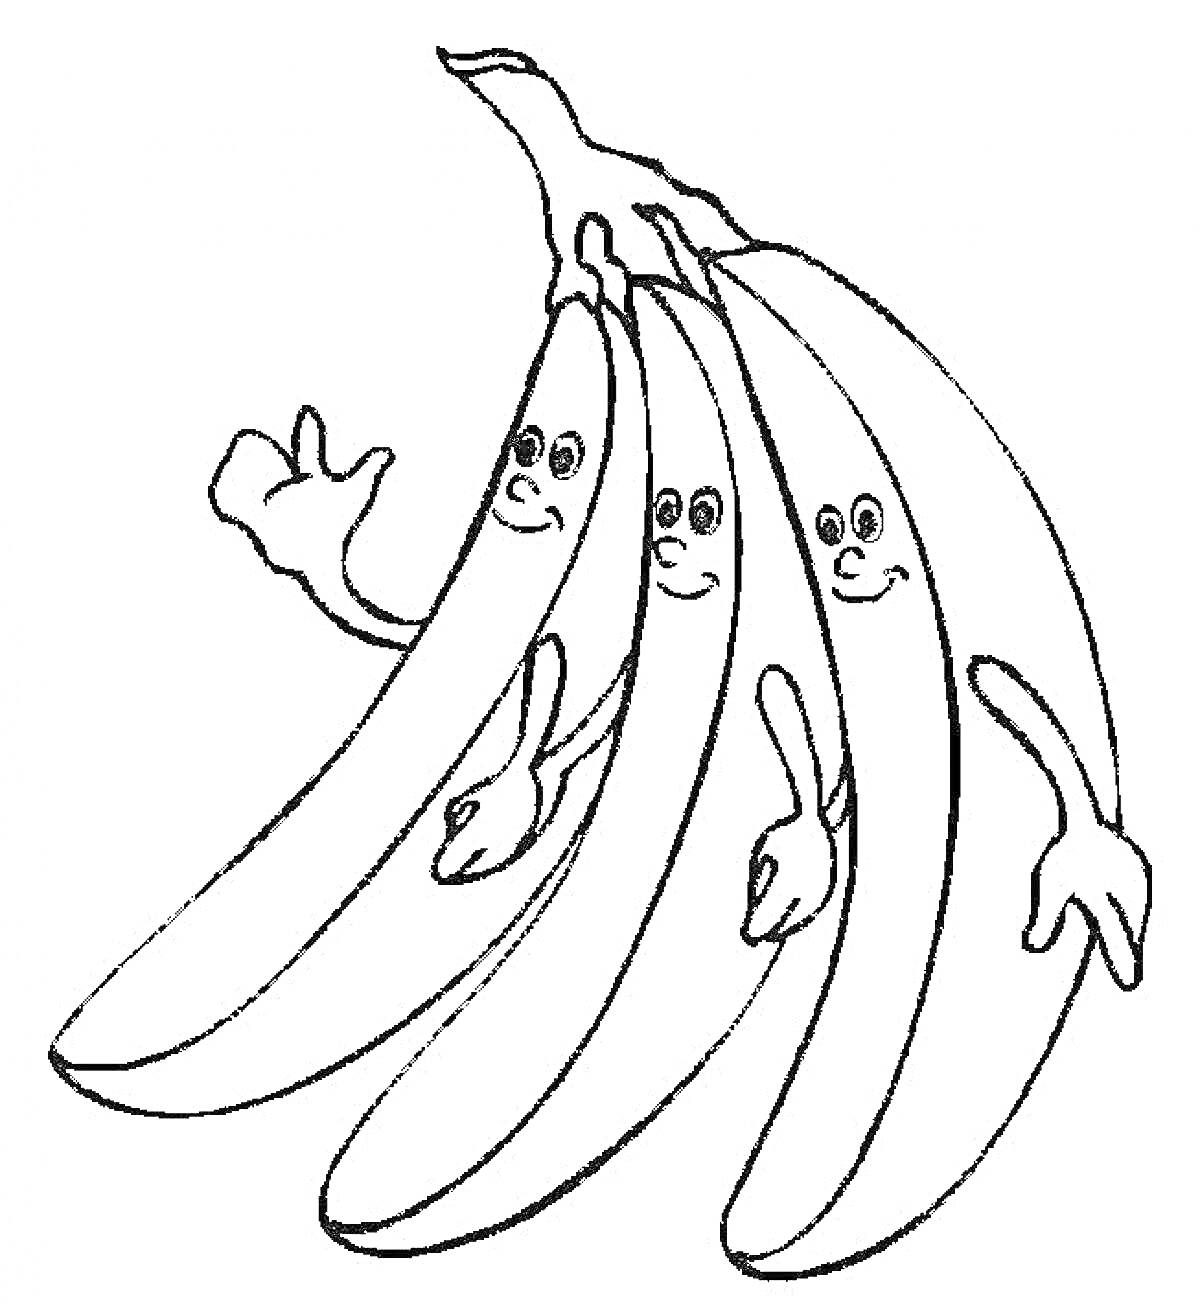 Раскраска Связка бананов с лицами и руками